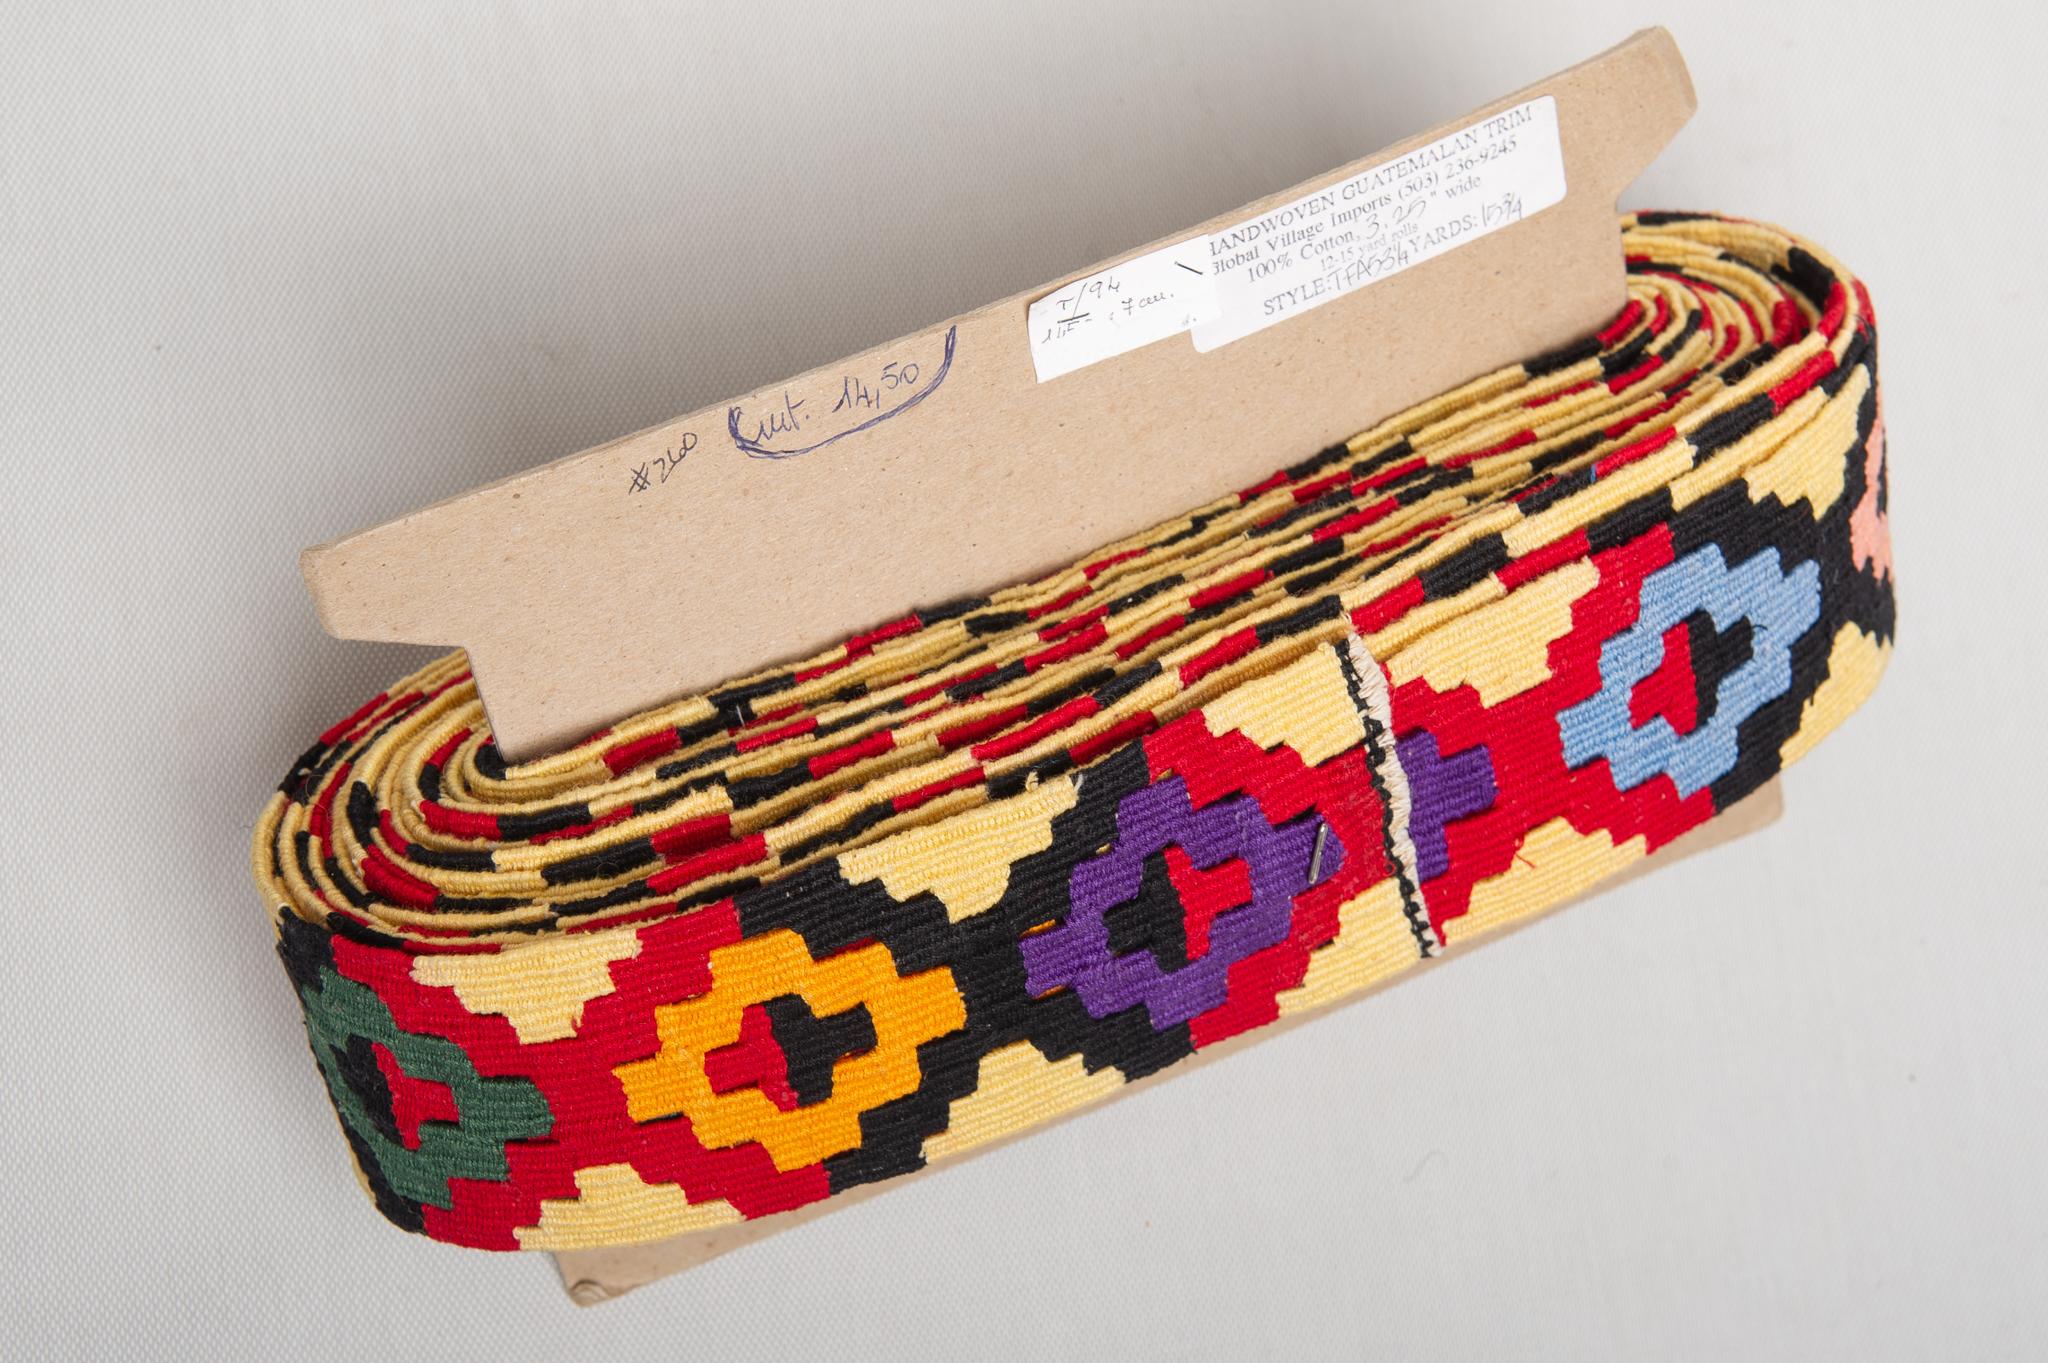 Rare bordure en kilim polychrome du Guatemala, entièrement réalisée à la main sur un métier à tisser.
C'est intéressant pour ...quelque chose dans votre maison : autour d'une couverture ou ... dites-moi vos idées.